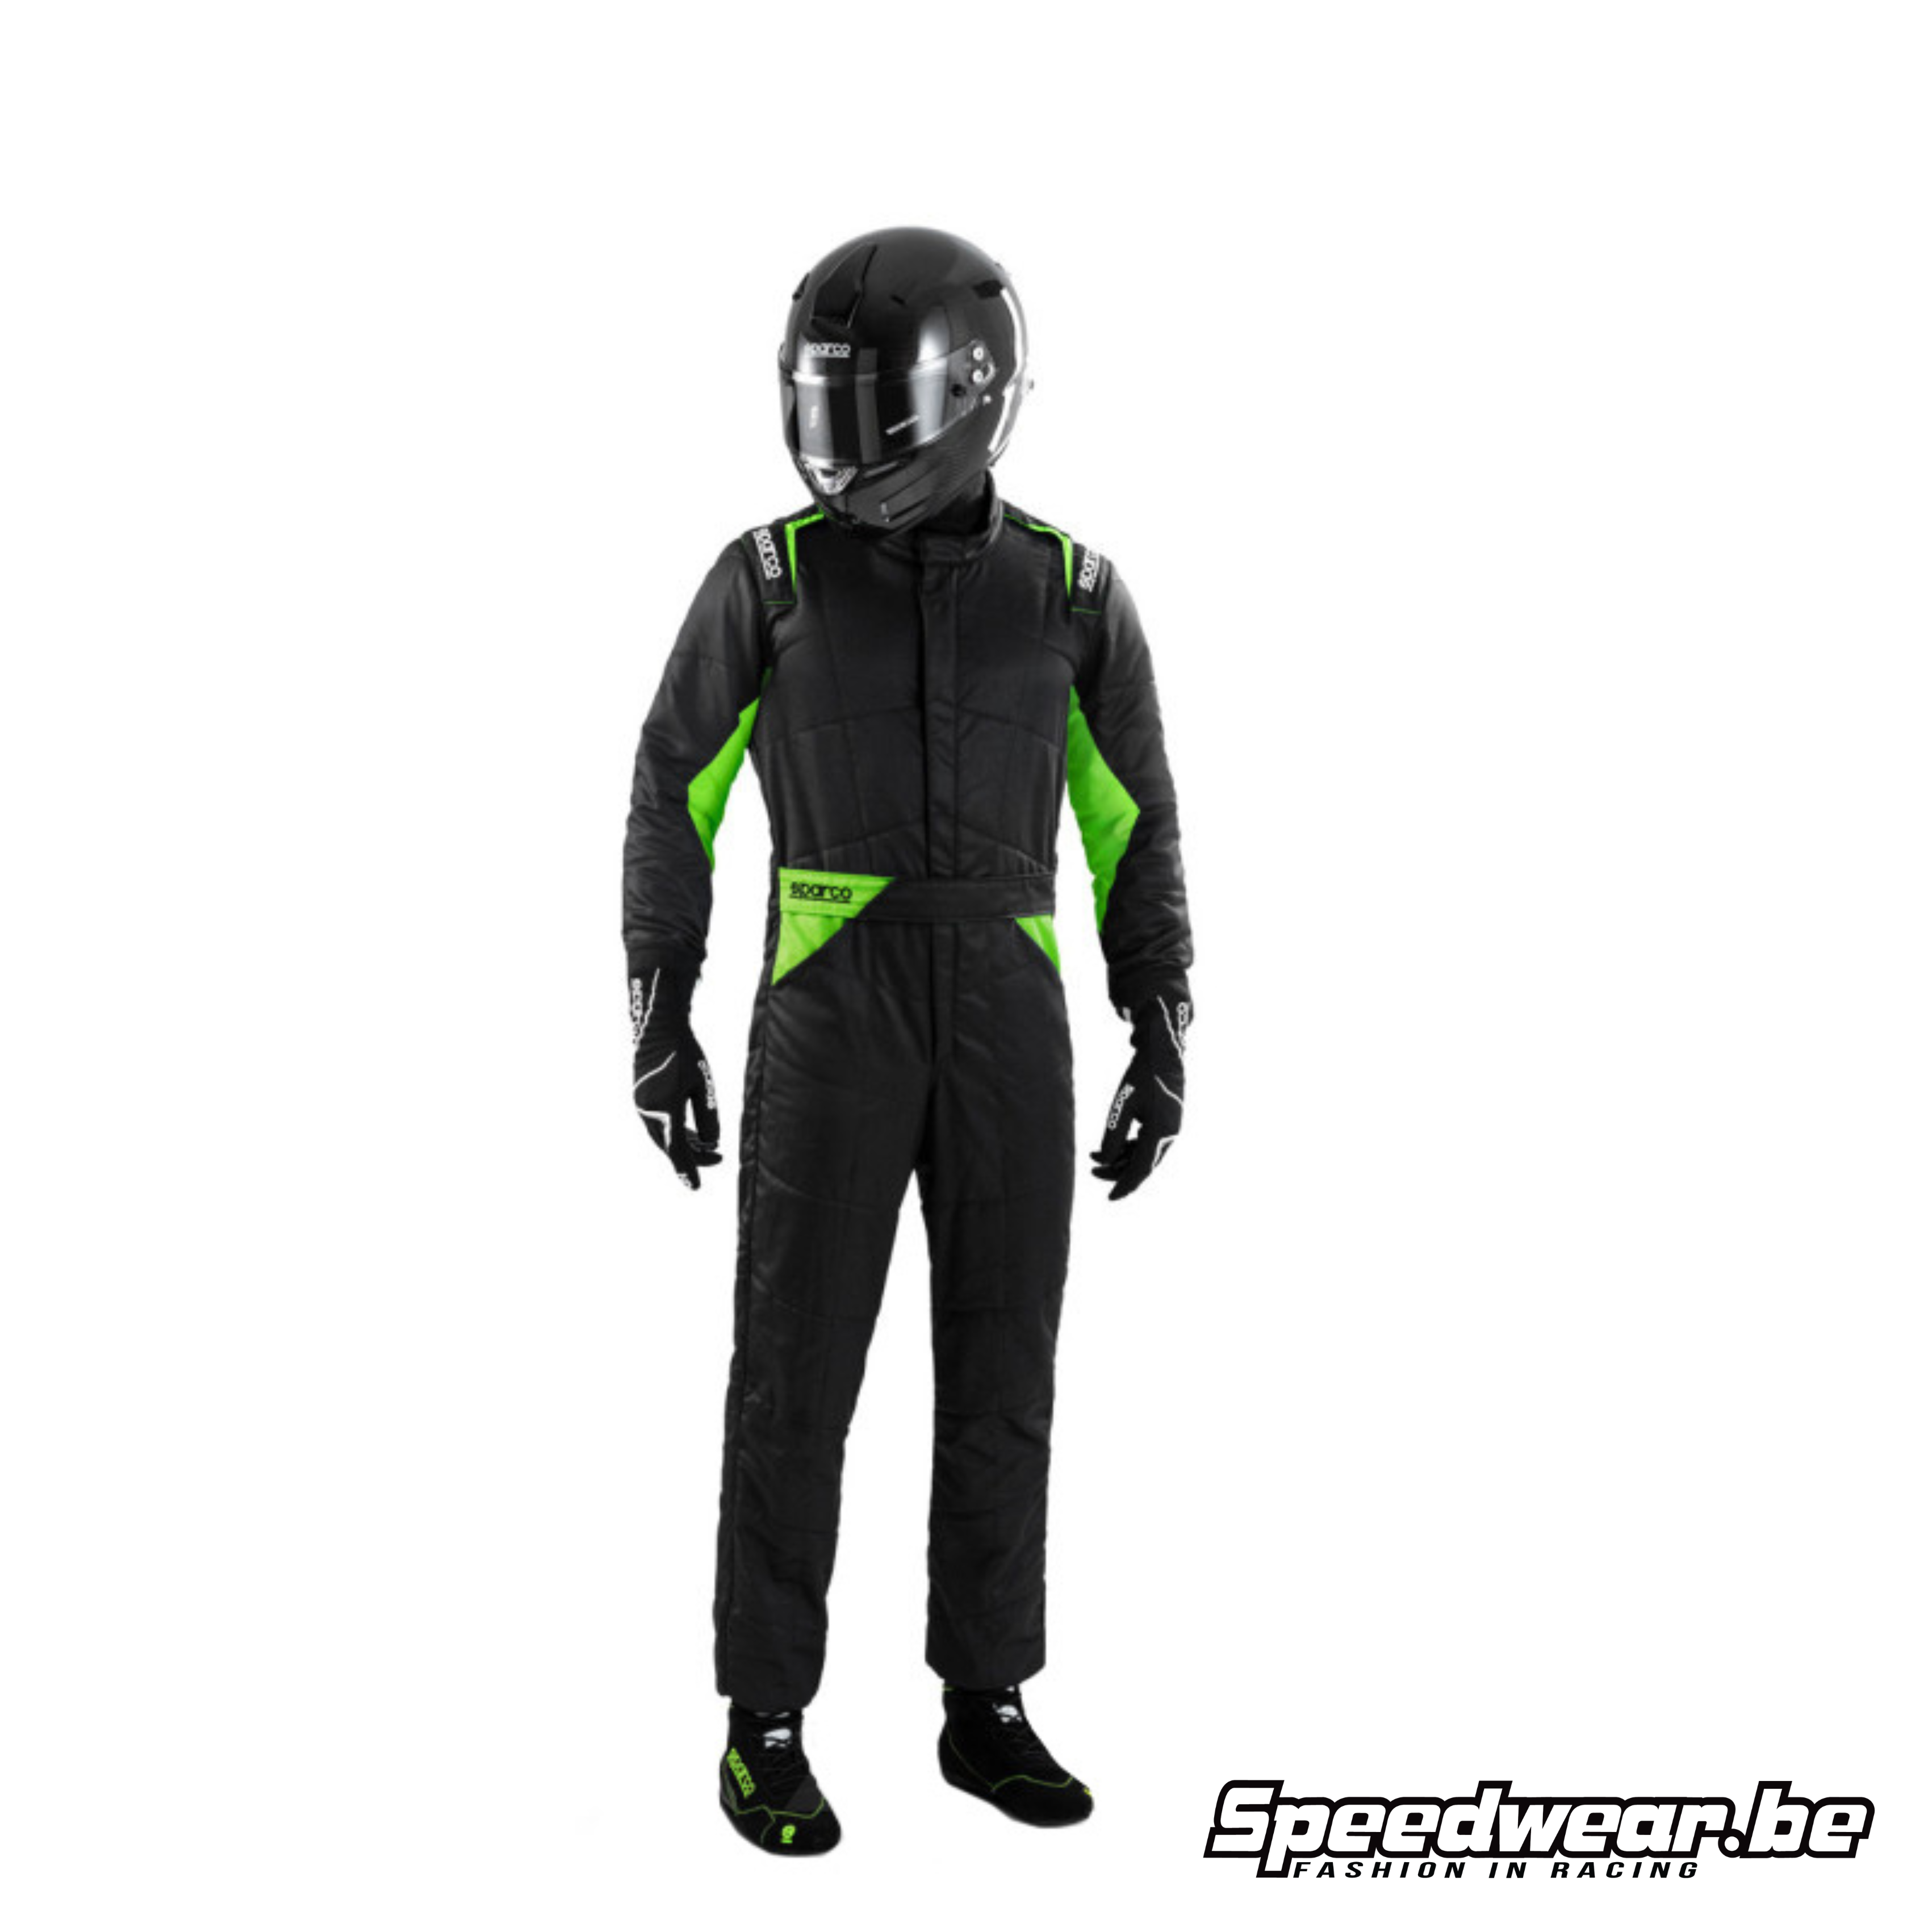 Sparco SPRINT Autosport Race suit